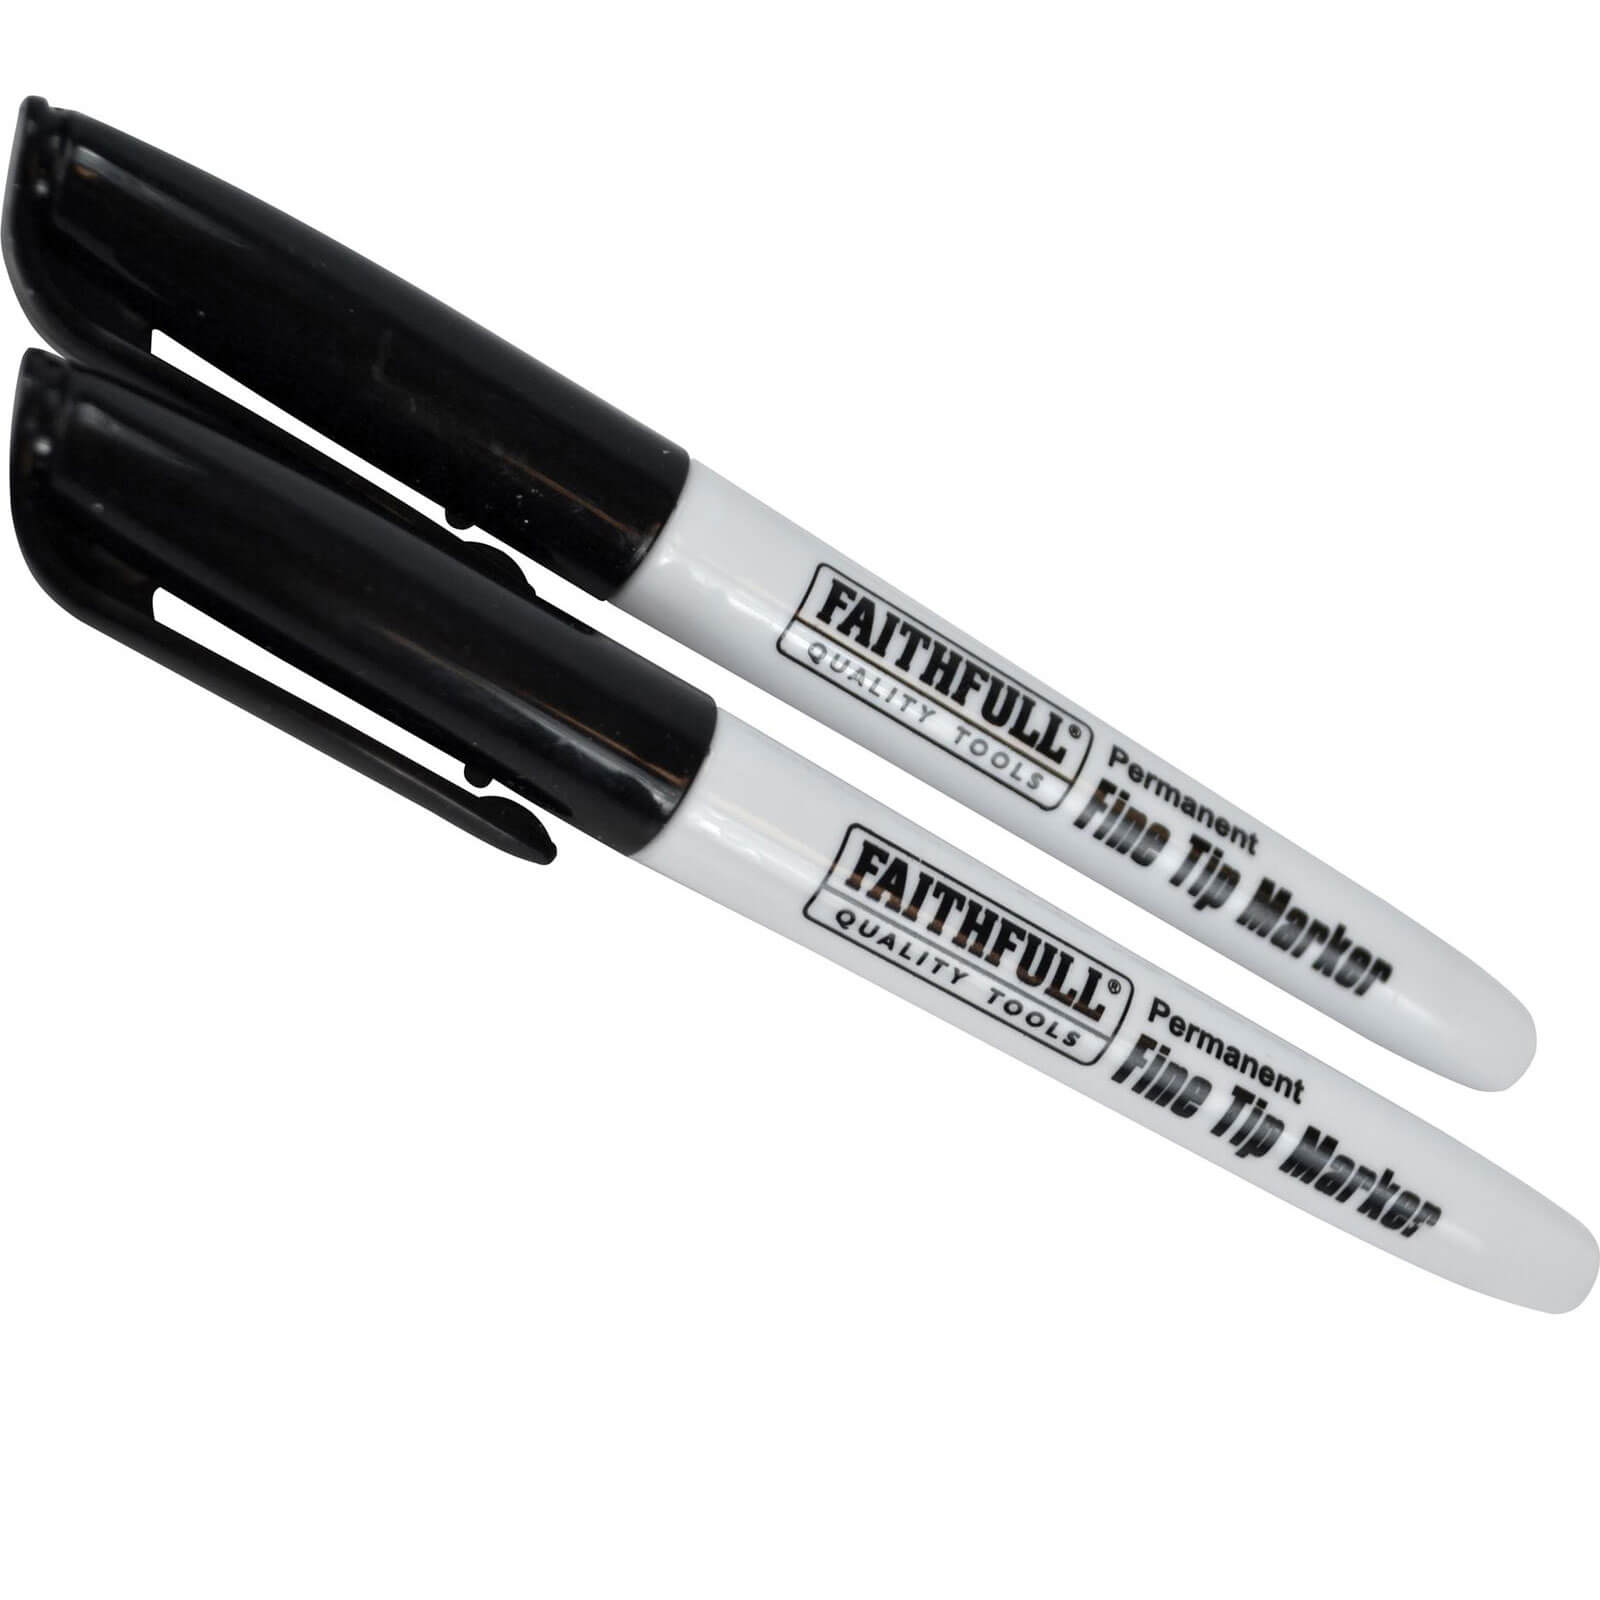 Image of Faithfull Fine Tip Permanent Marker Pen Black Pack of 2